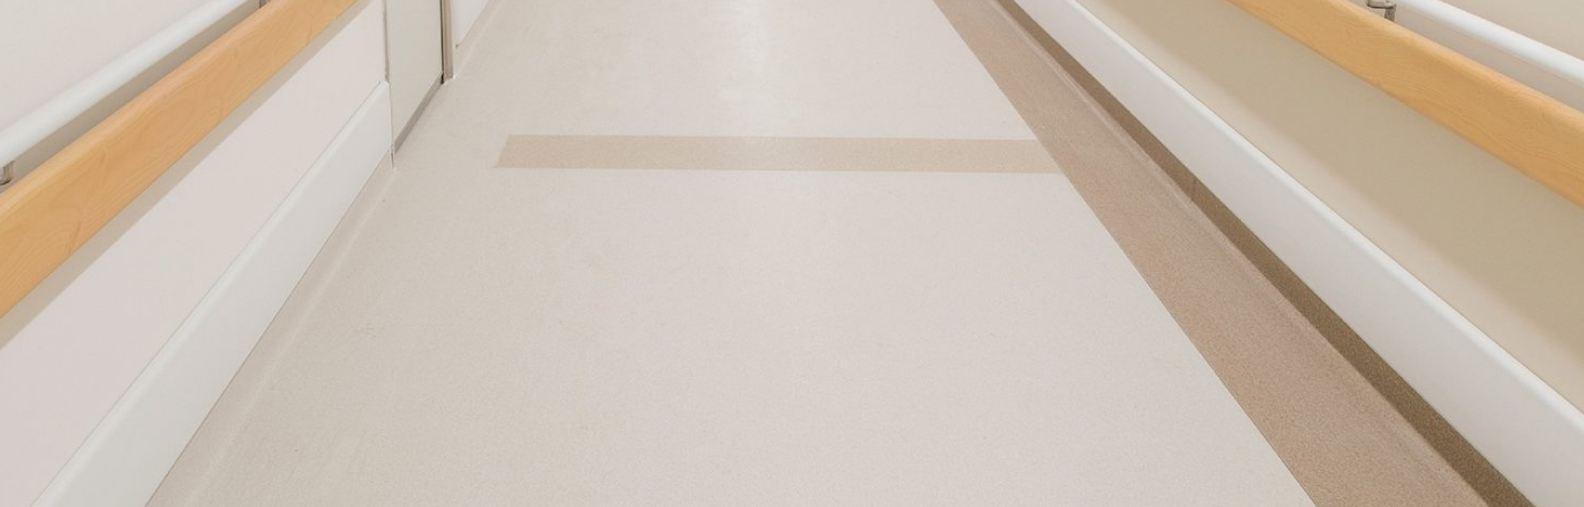 优洁龙-医疗同质透心地板